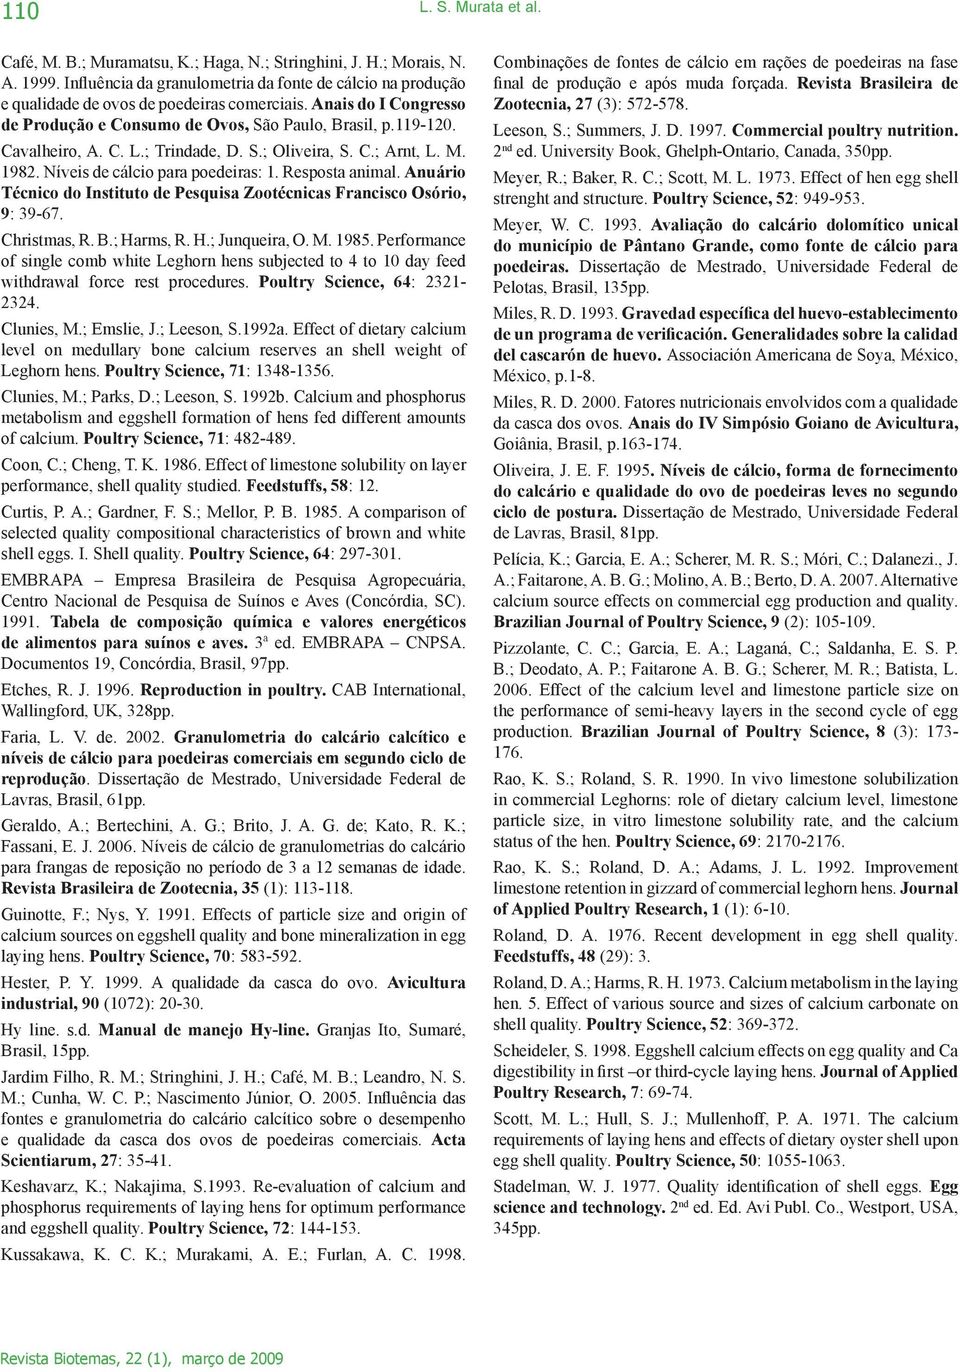 C. L.; Trindade, D. S.; Oliveira, S. C.; Arnt, L. M. 1982. Níveis de cálcio para poedeiras: 1. Resposta animal. Anuário Técnico do Instituto de Pesquisa Zootécnicas Francisco Osório, 9: 39-67.